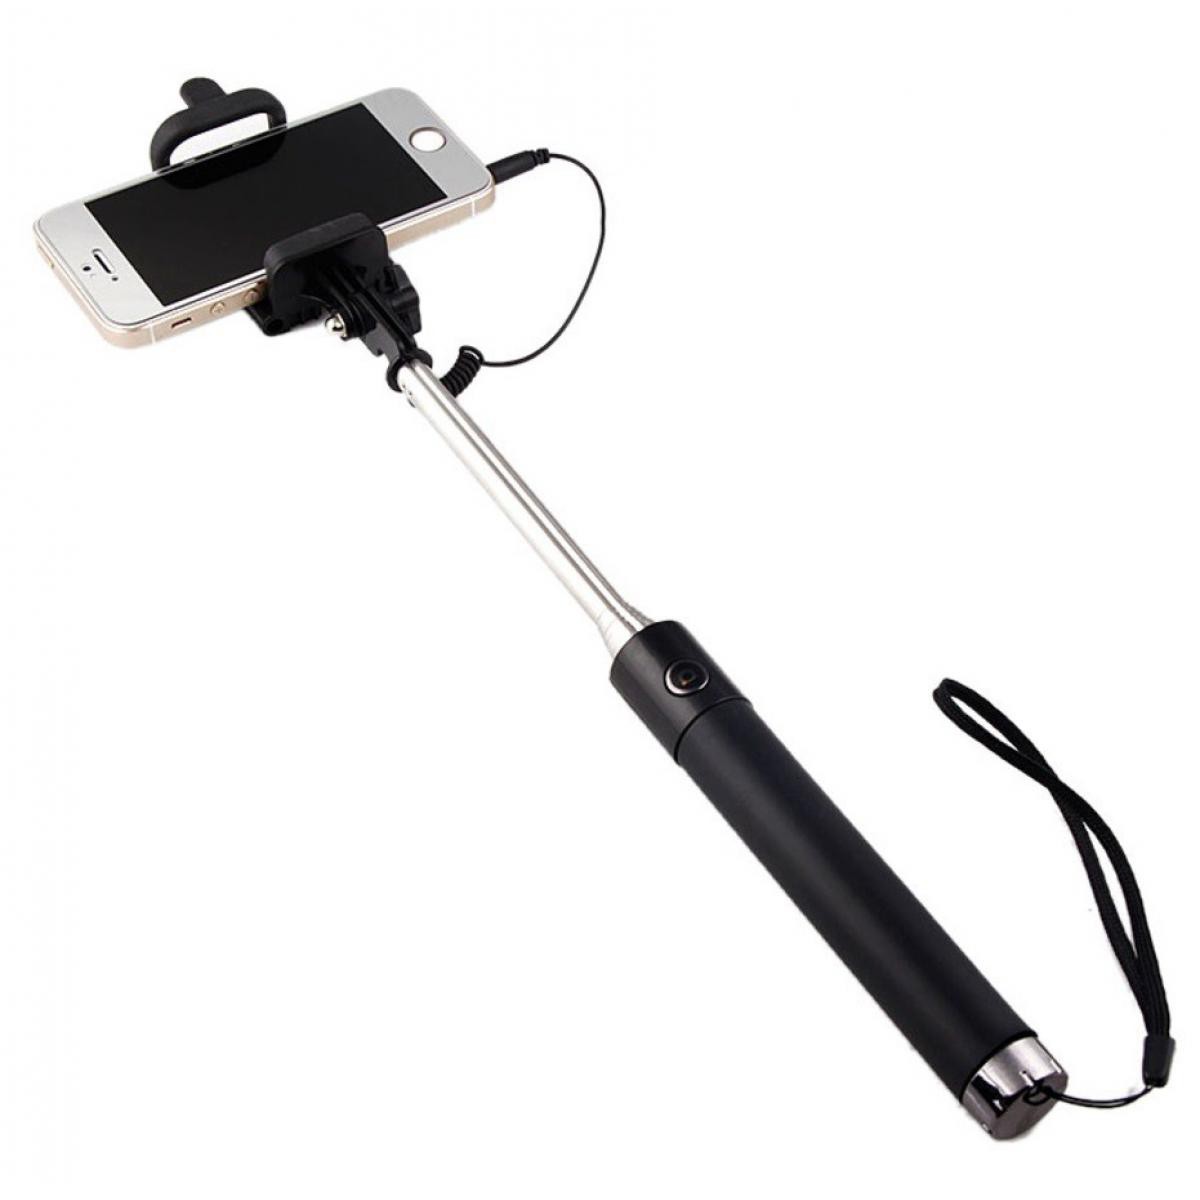 Shot - Selfie Stick Metal pour XIAOMI Mi 10 Smartphone Perche Android IOS Reglable Bouton Photo Cable Jack Noir - Autres accessoires smartphone